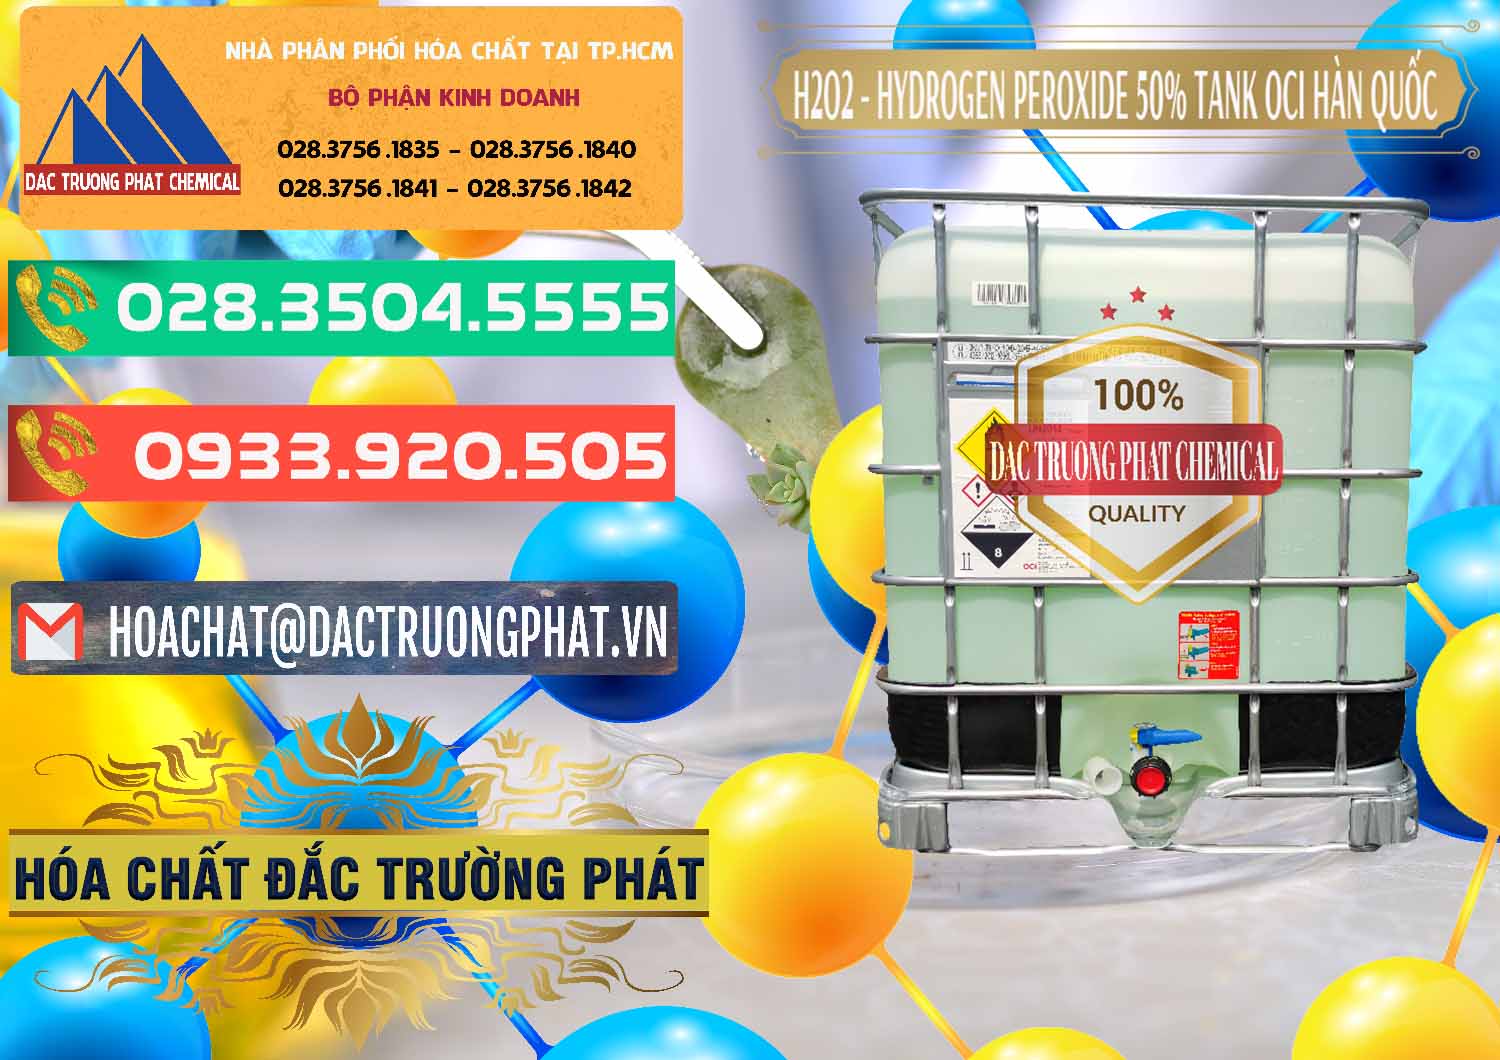 Cty chuyên phân phối và bán H2O2 - Hydrogen Peroxide 50% Tank IBC Bồn Hàn Quốc OCI - 0074 - Nơi chuyên phân phối và nhập khẩu hóa chất tại TP.HCM - congtyhoachat.com.vn